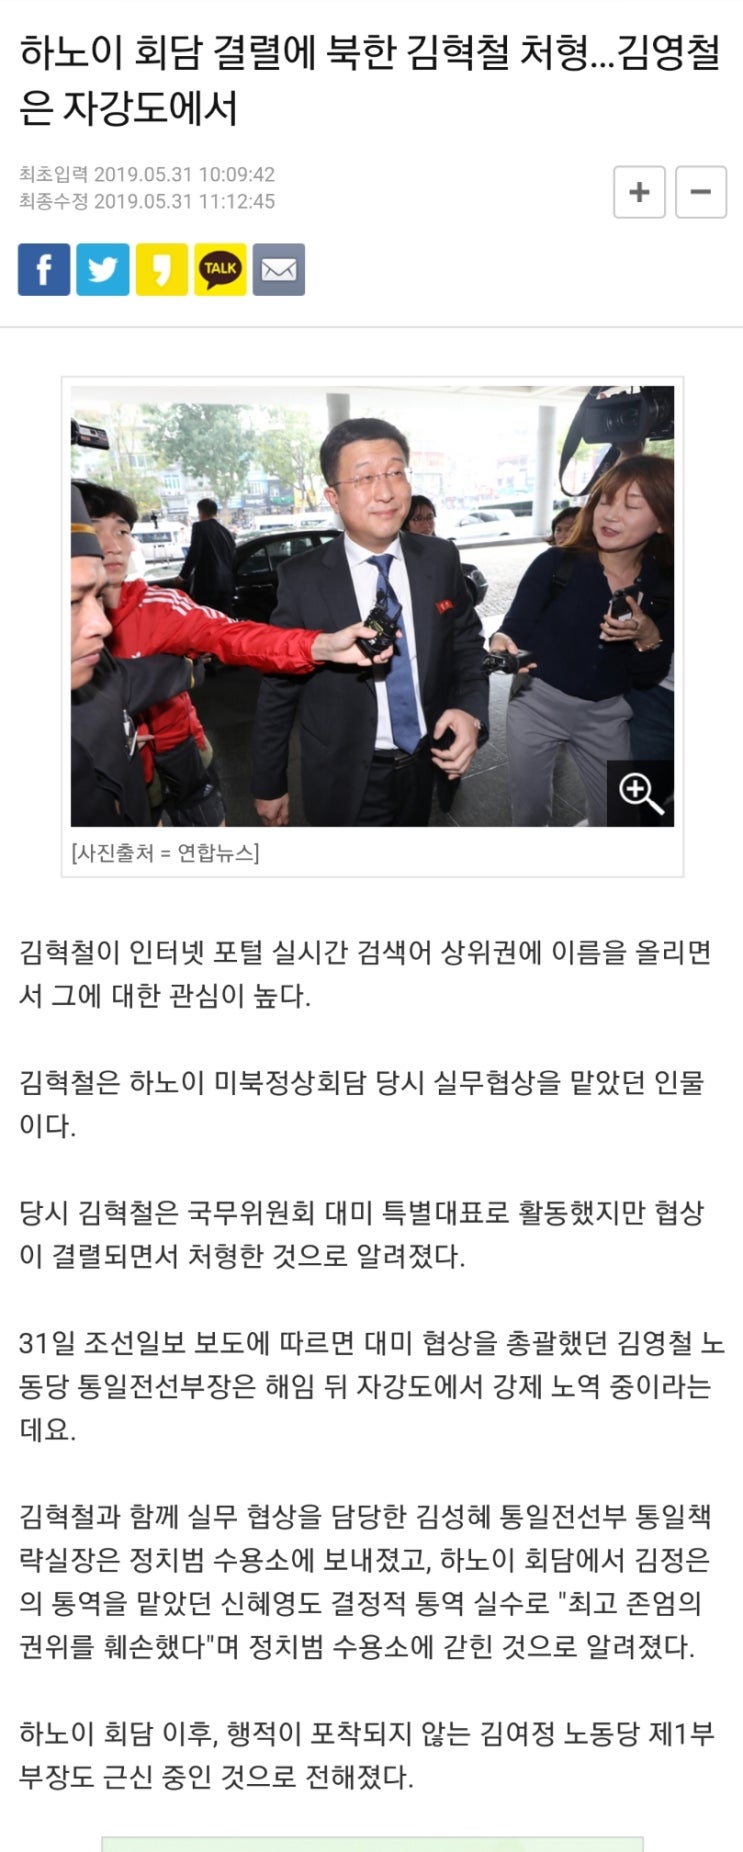 하노이 회담 결렬에 북한 김혁철 처형…김영철은 자강도에서